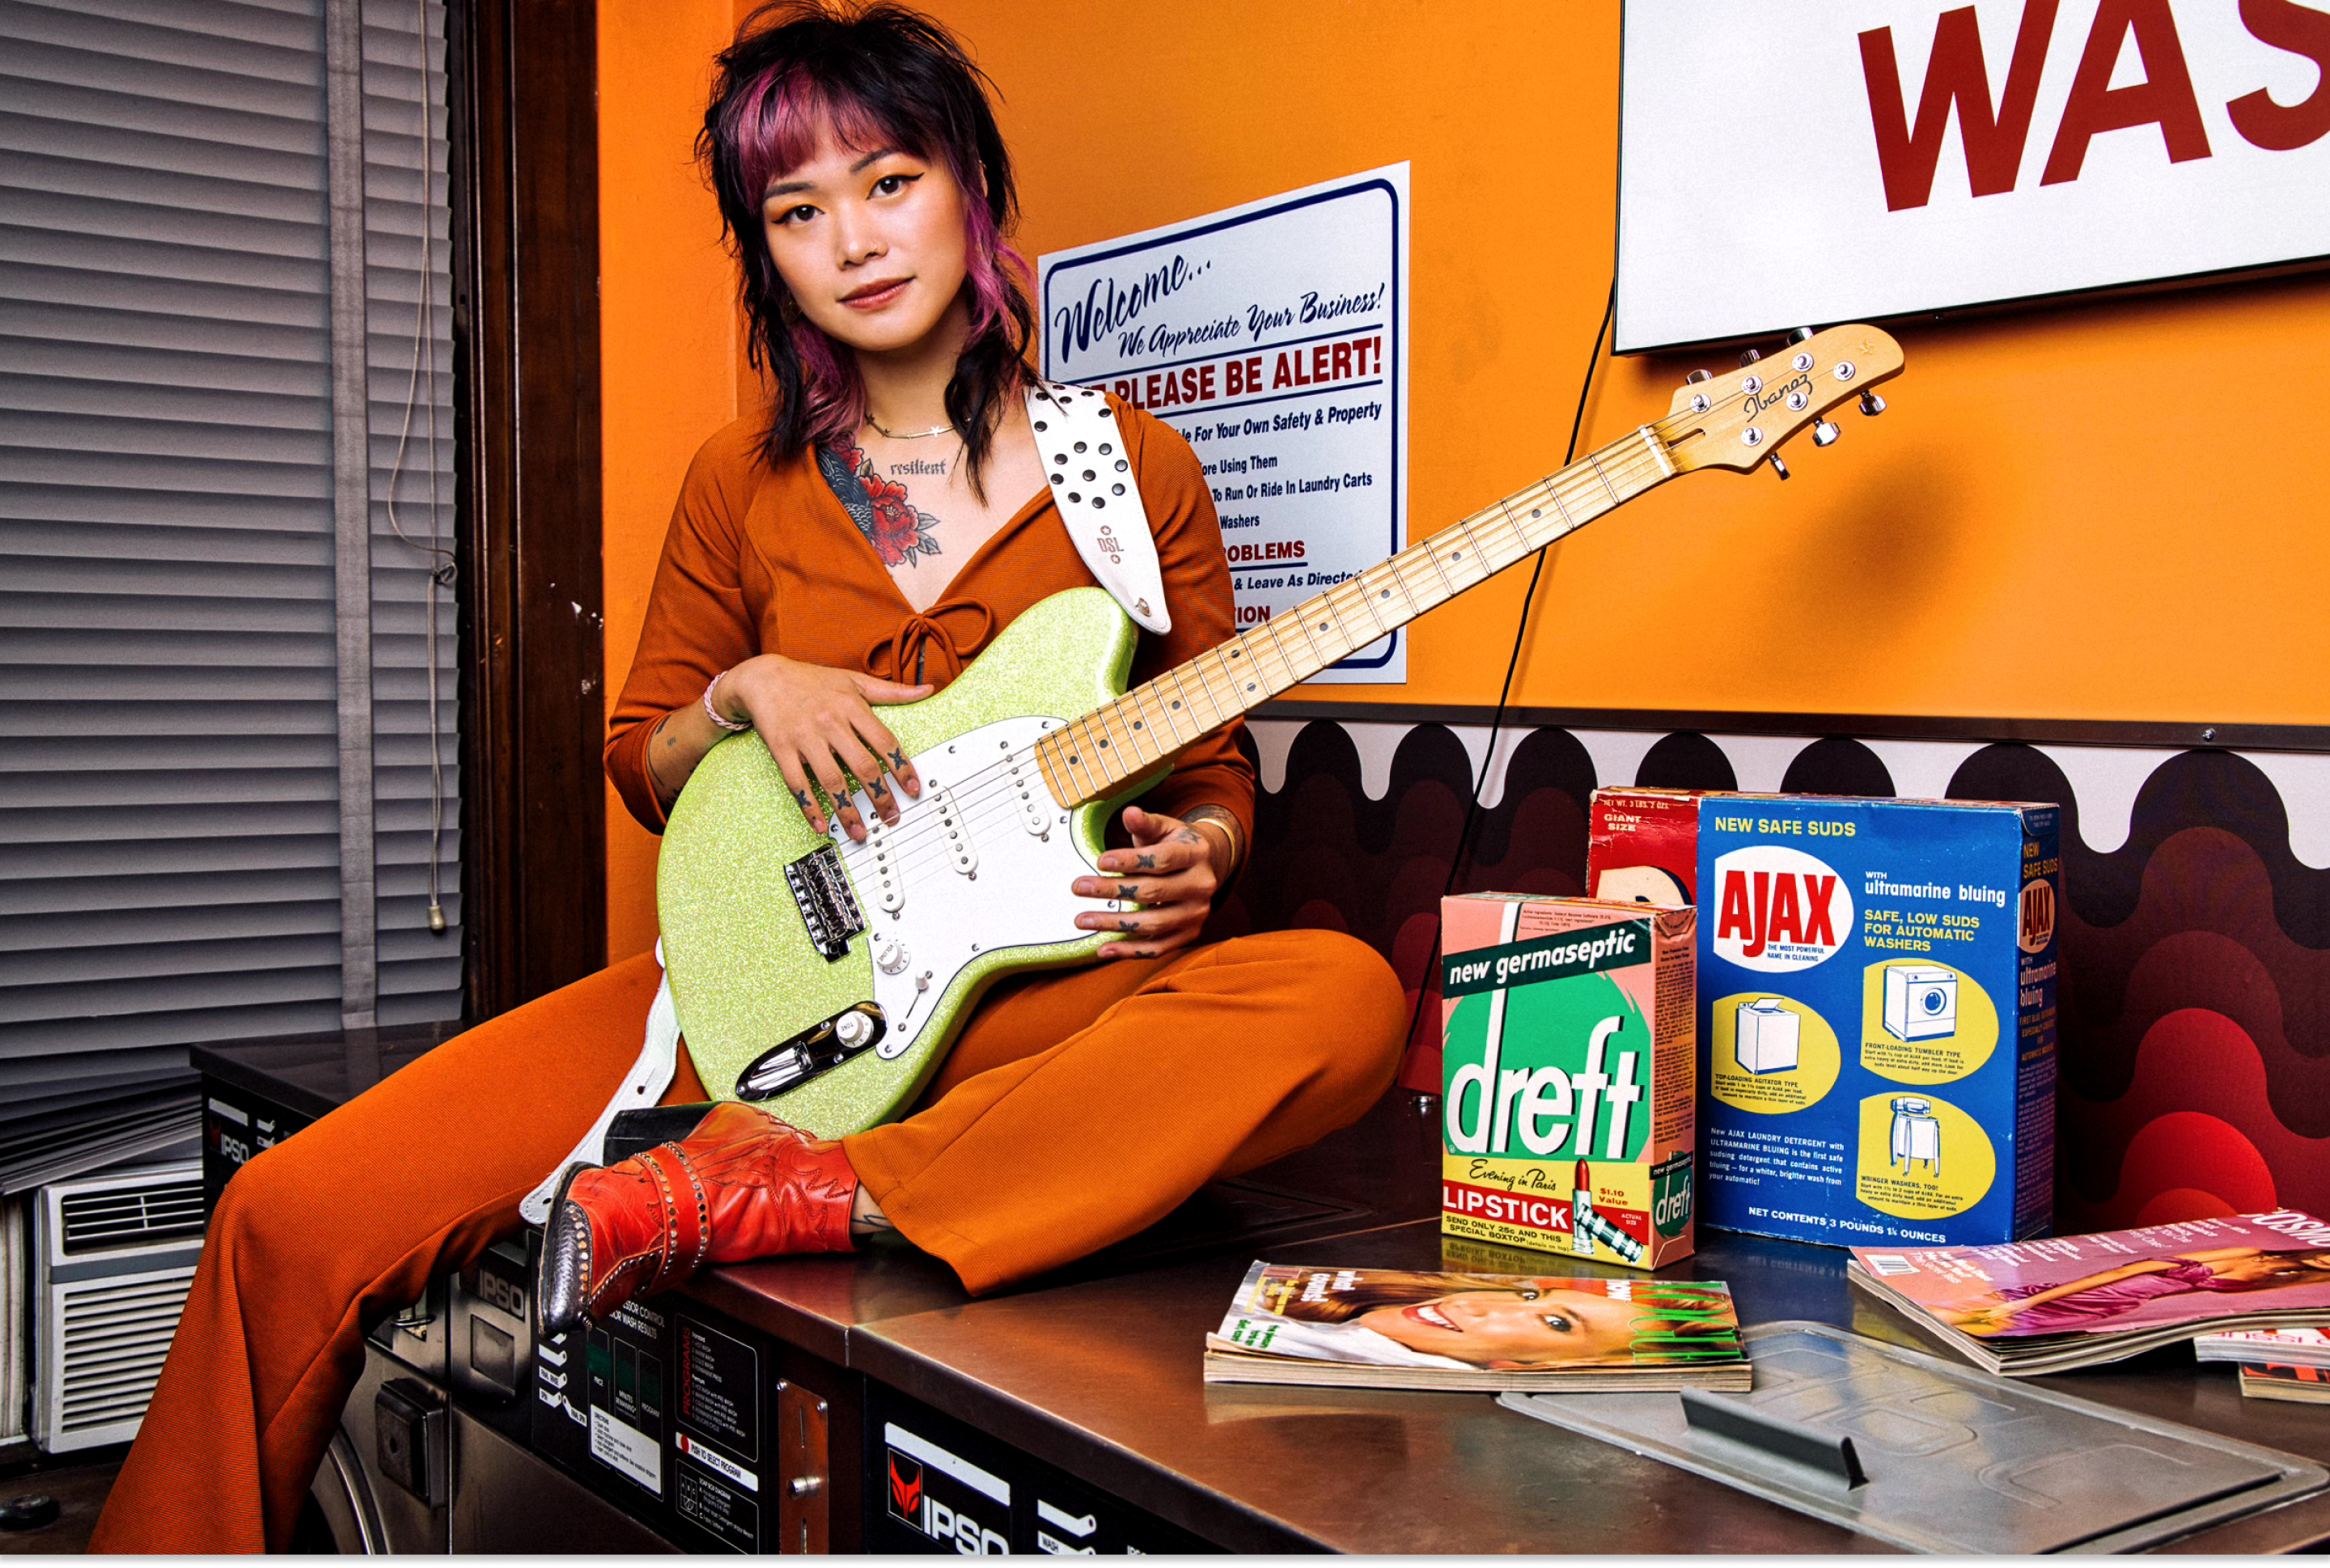 Yvette Young s'est assise sur une machine à laver en tenant sa guitare dans une laverie.